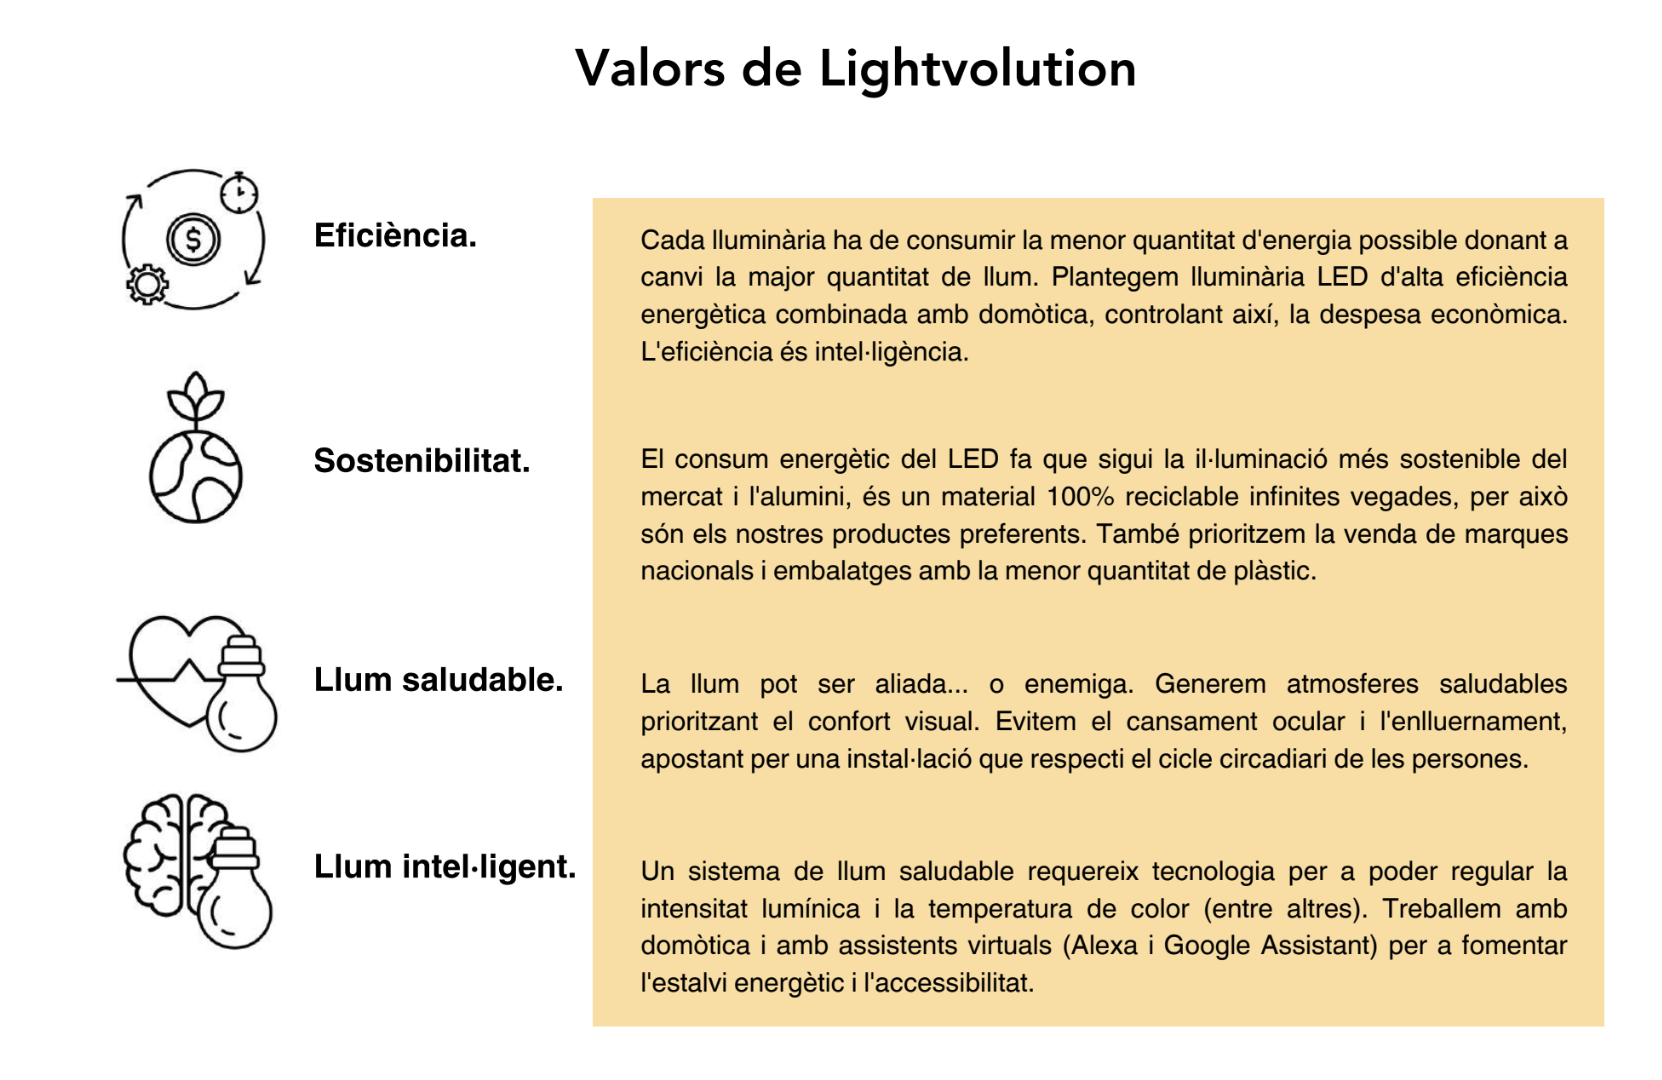 Valors de l'estudi d'il·luminació de Sant Cugat, LightVolution. FOTO: Cedida